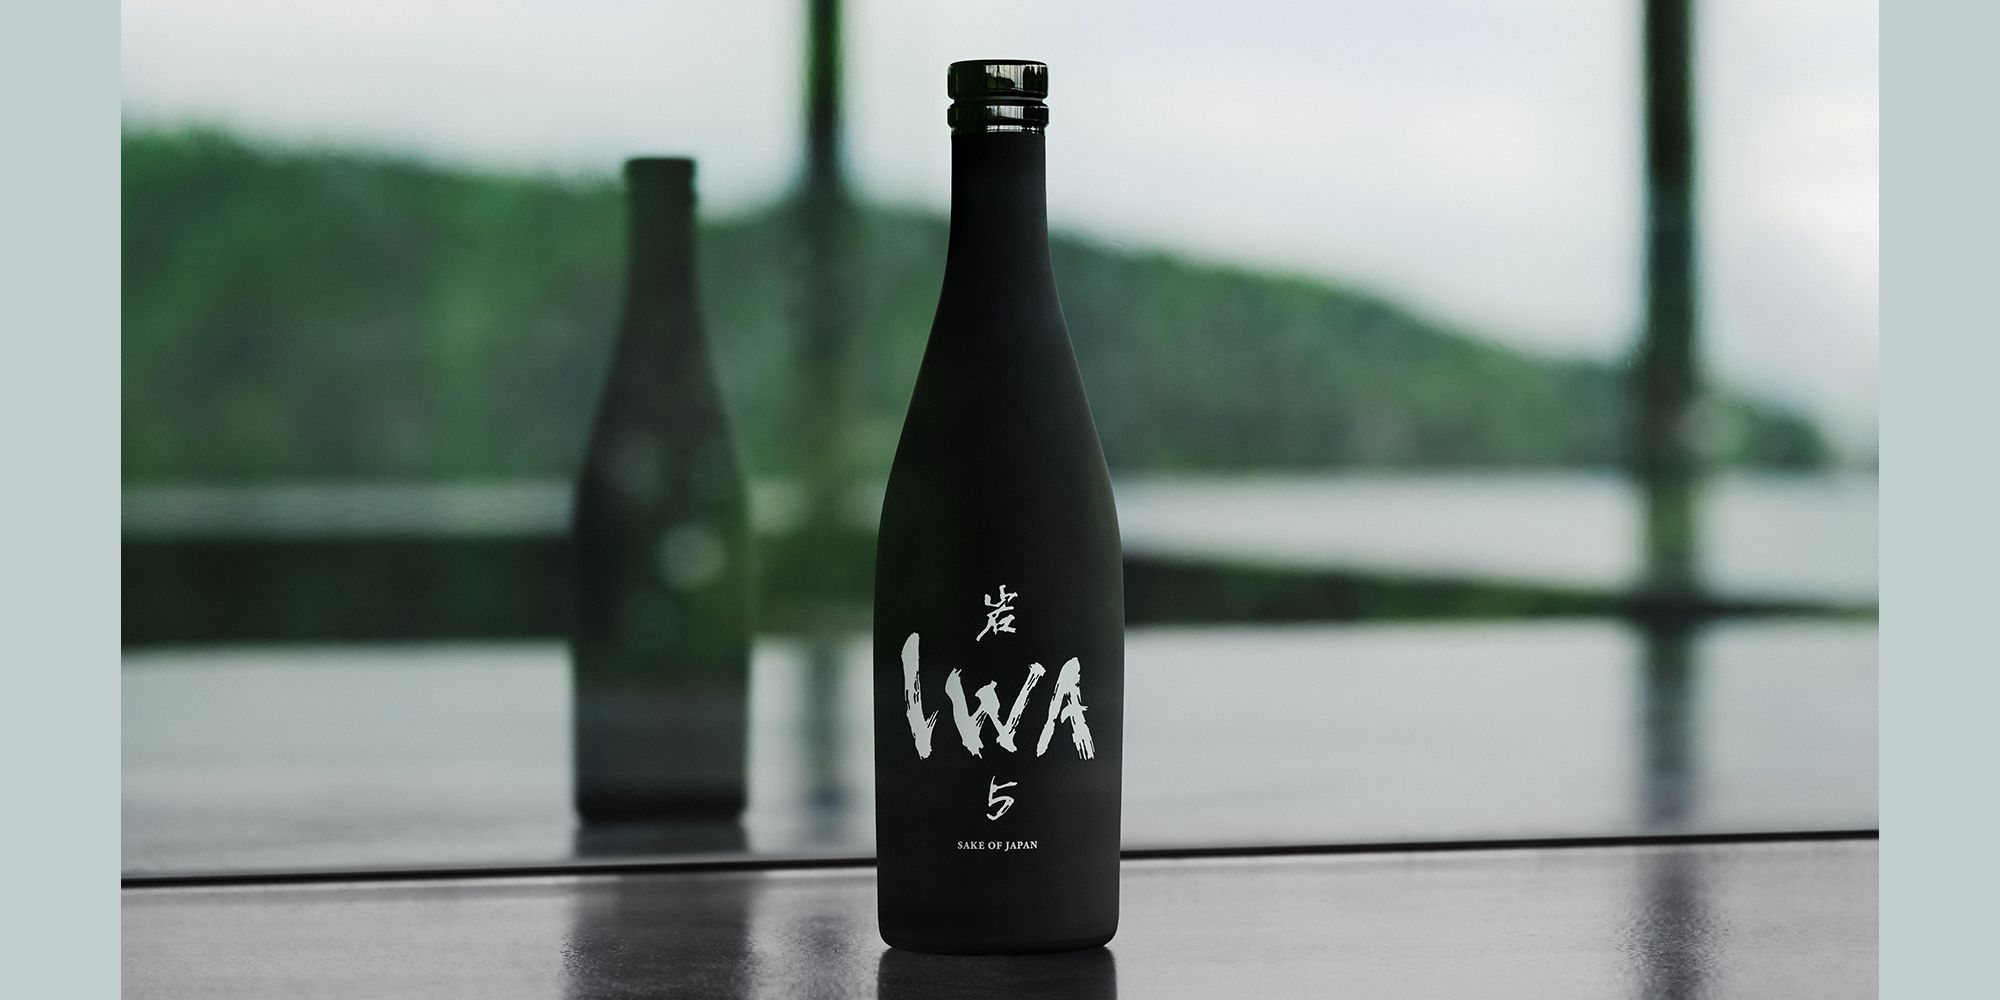 ドン•ペリニヨン 日本酒 IWA5 720ml